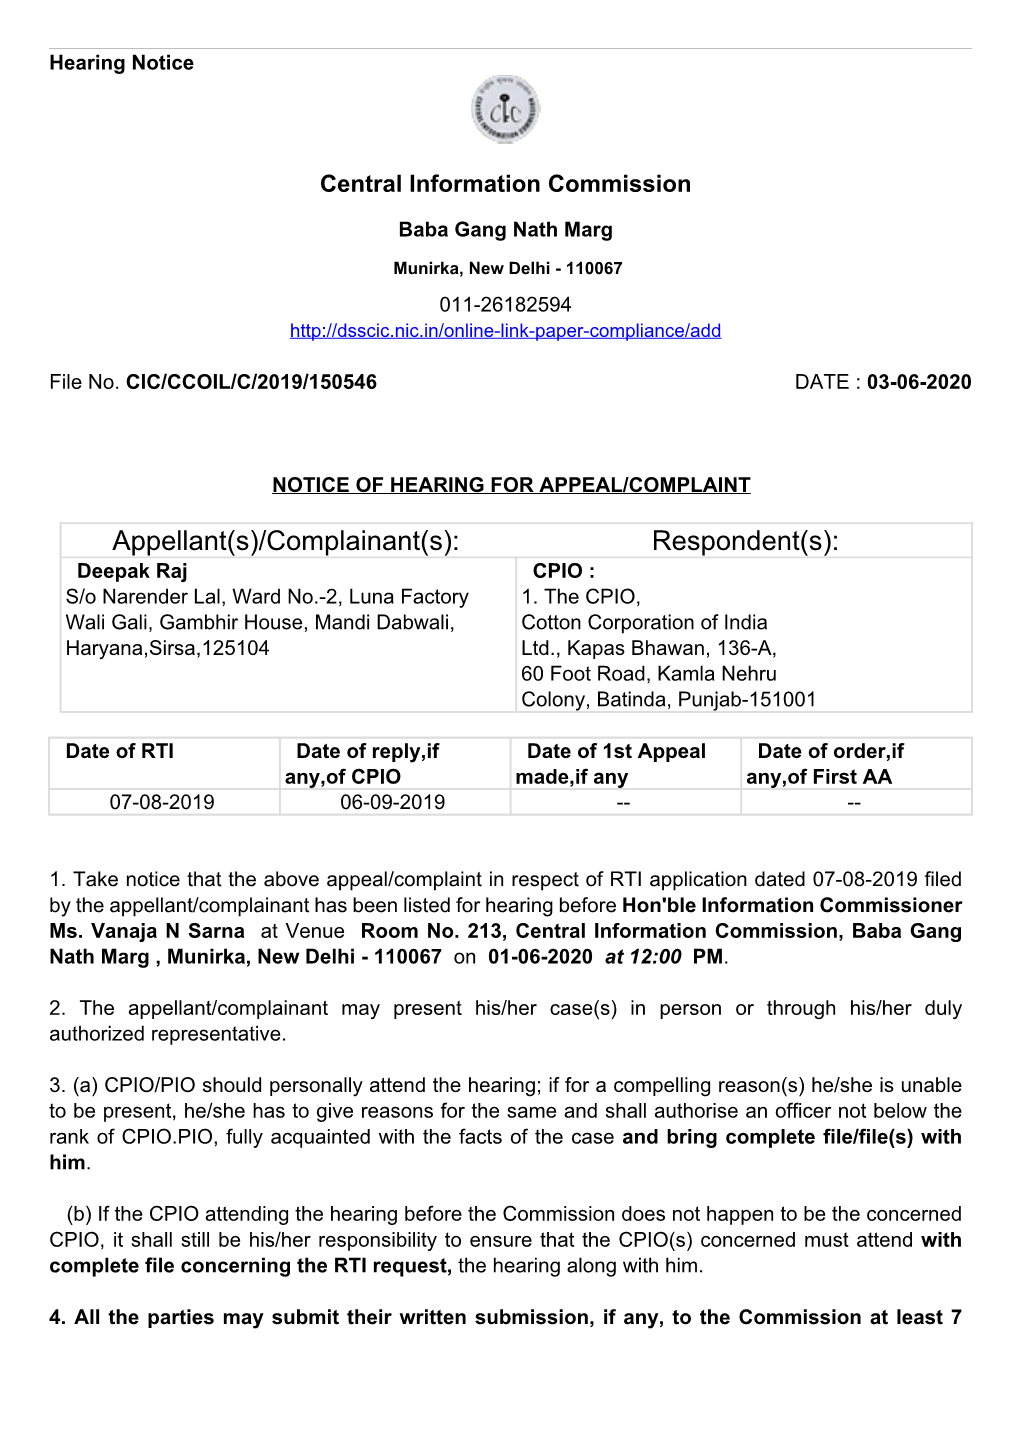 Appellant(S)/Complainant(S): Respondent(S): Deepak Raj CPIO : S/O Narender Lal, Ward No.-2, Luna Factory 1